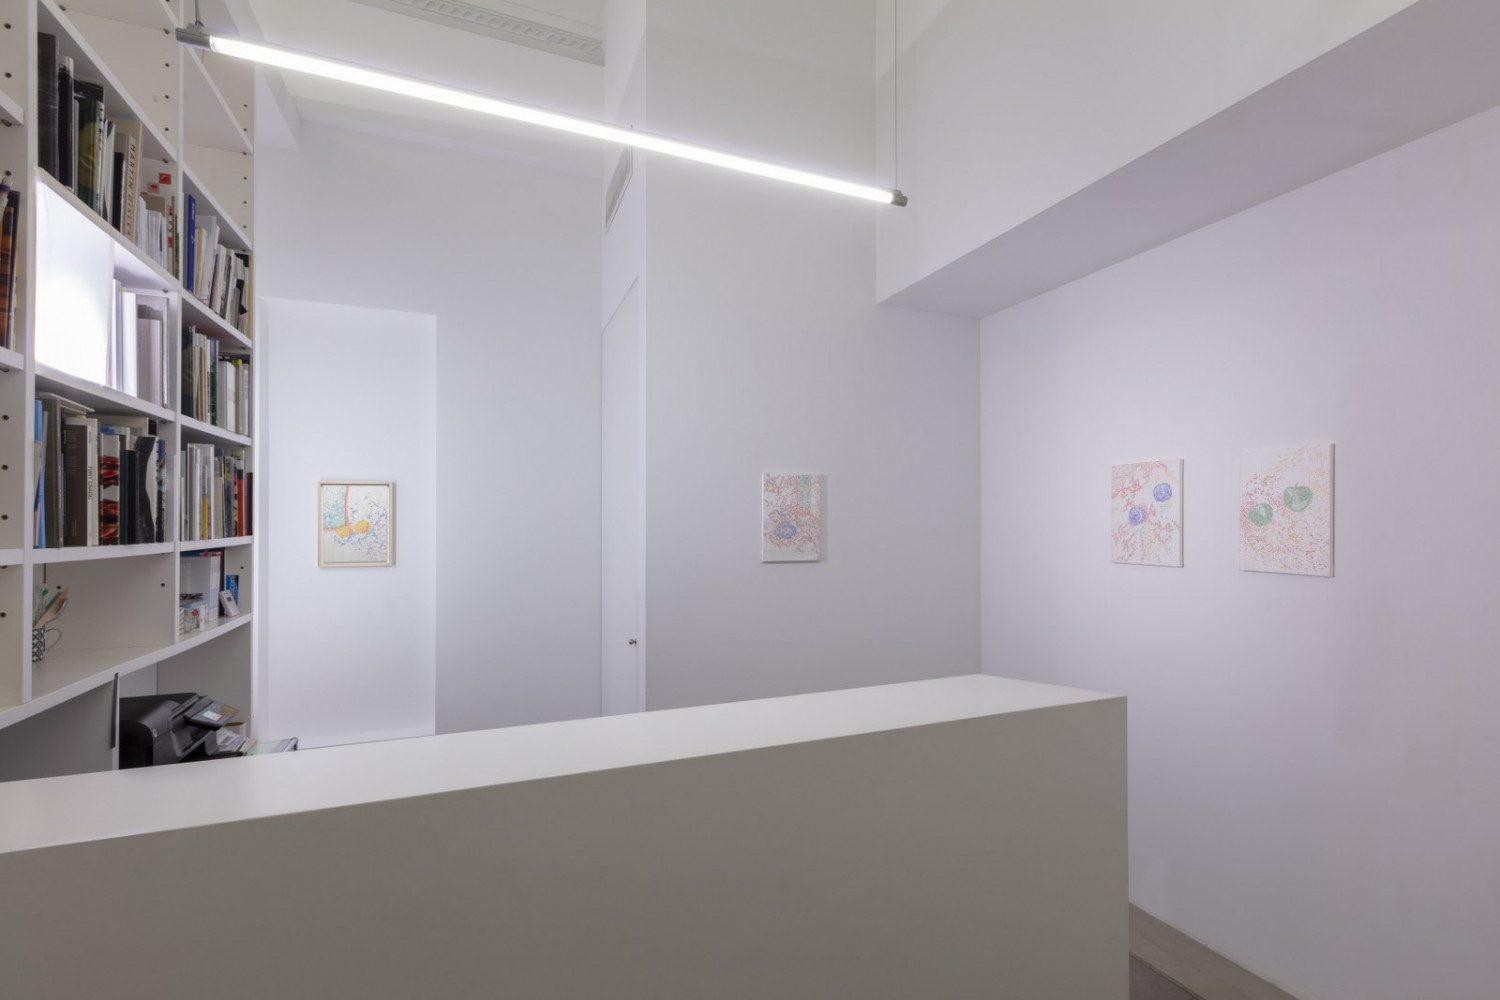 Véronique Arnold, Installationsansicht, Buchmann Lugano, 2023–2023